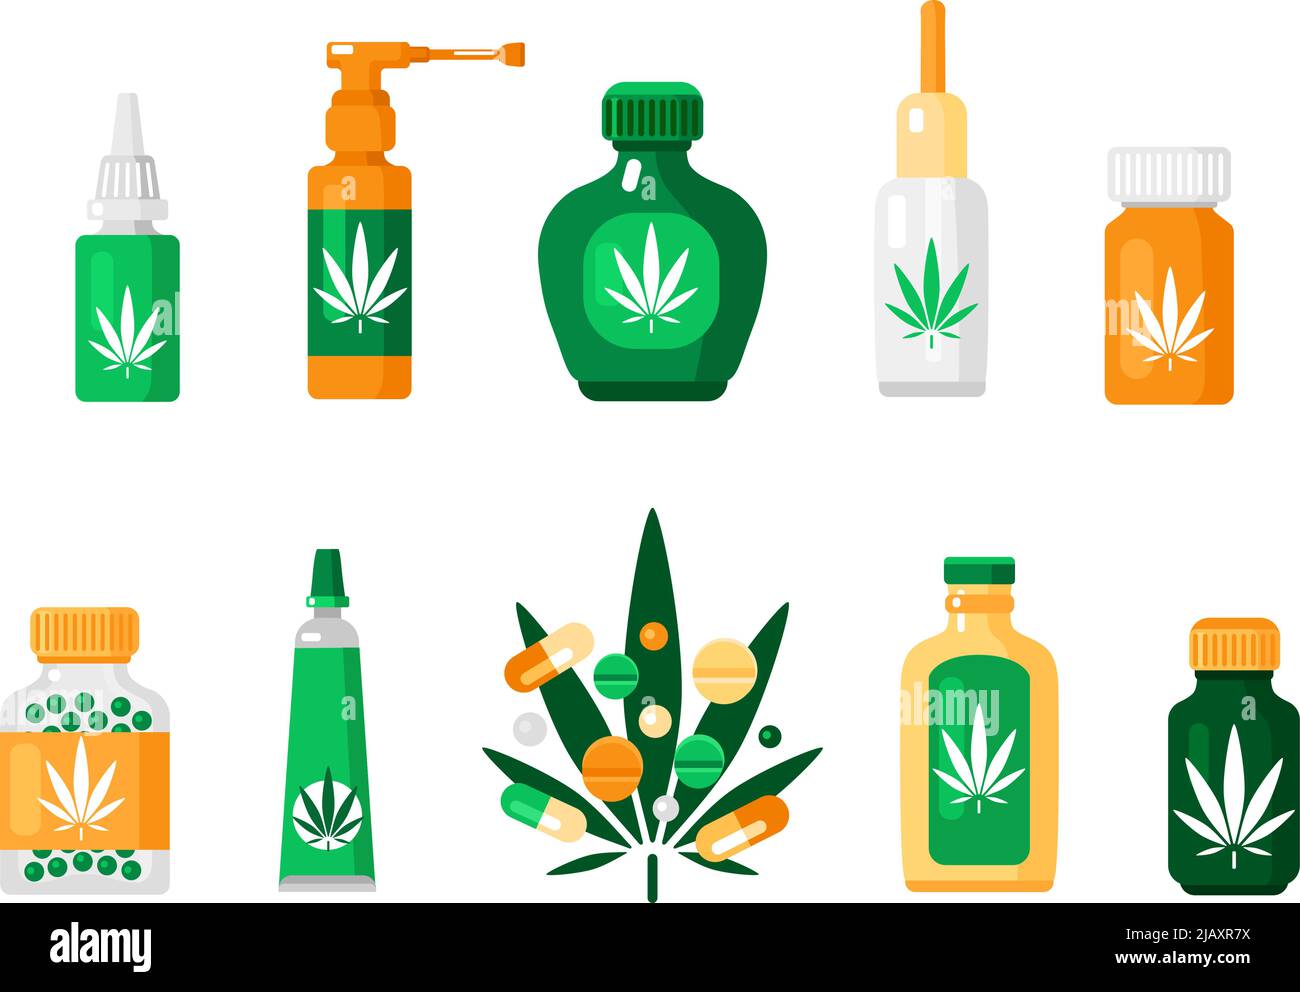 Farbige Apotheke Cannabiszusammensetzung in flachem Stil mit verschiedenen Arten von Drogen und Methoden der Verwendung von Vektor-Illustration Stock Vektor